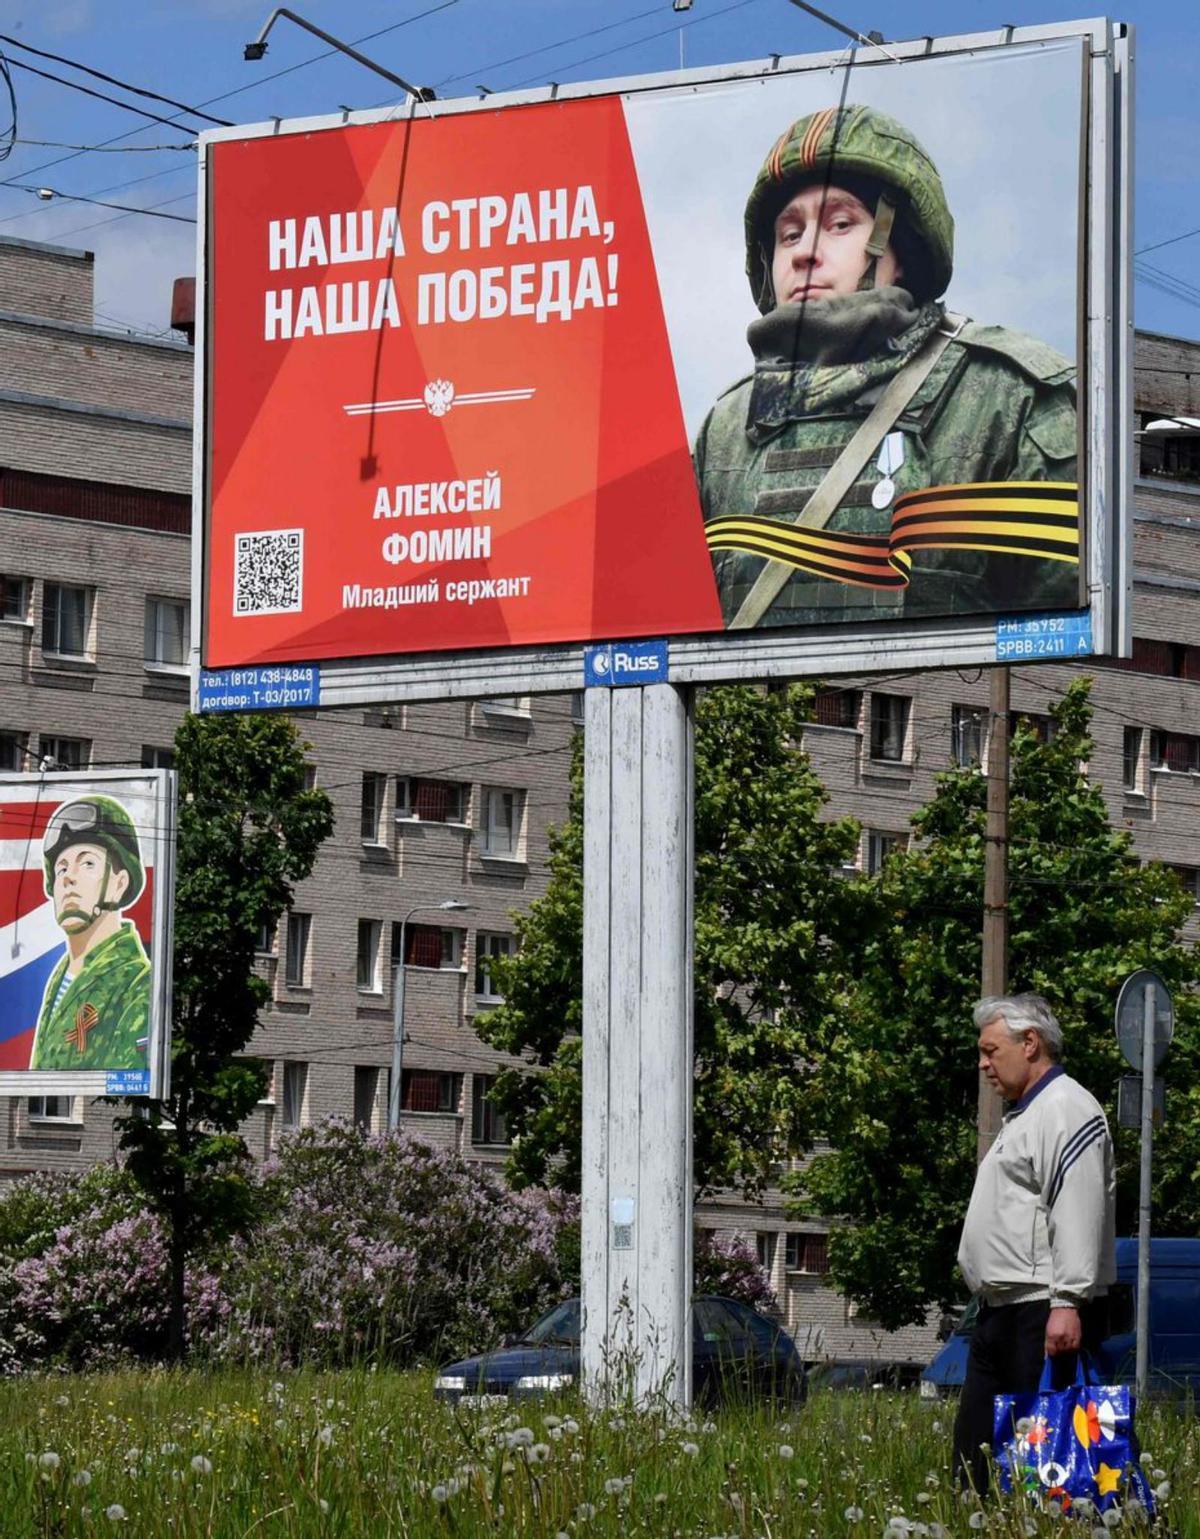 Milicians russos contraris a Putin prenen un poble pròxim a Ucraïna